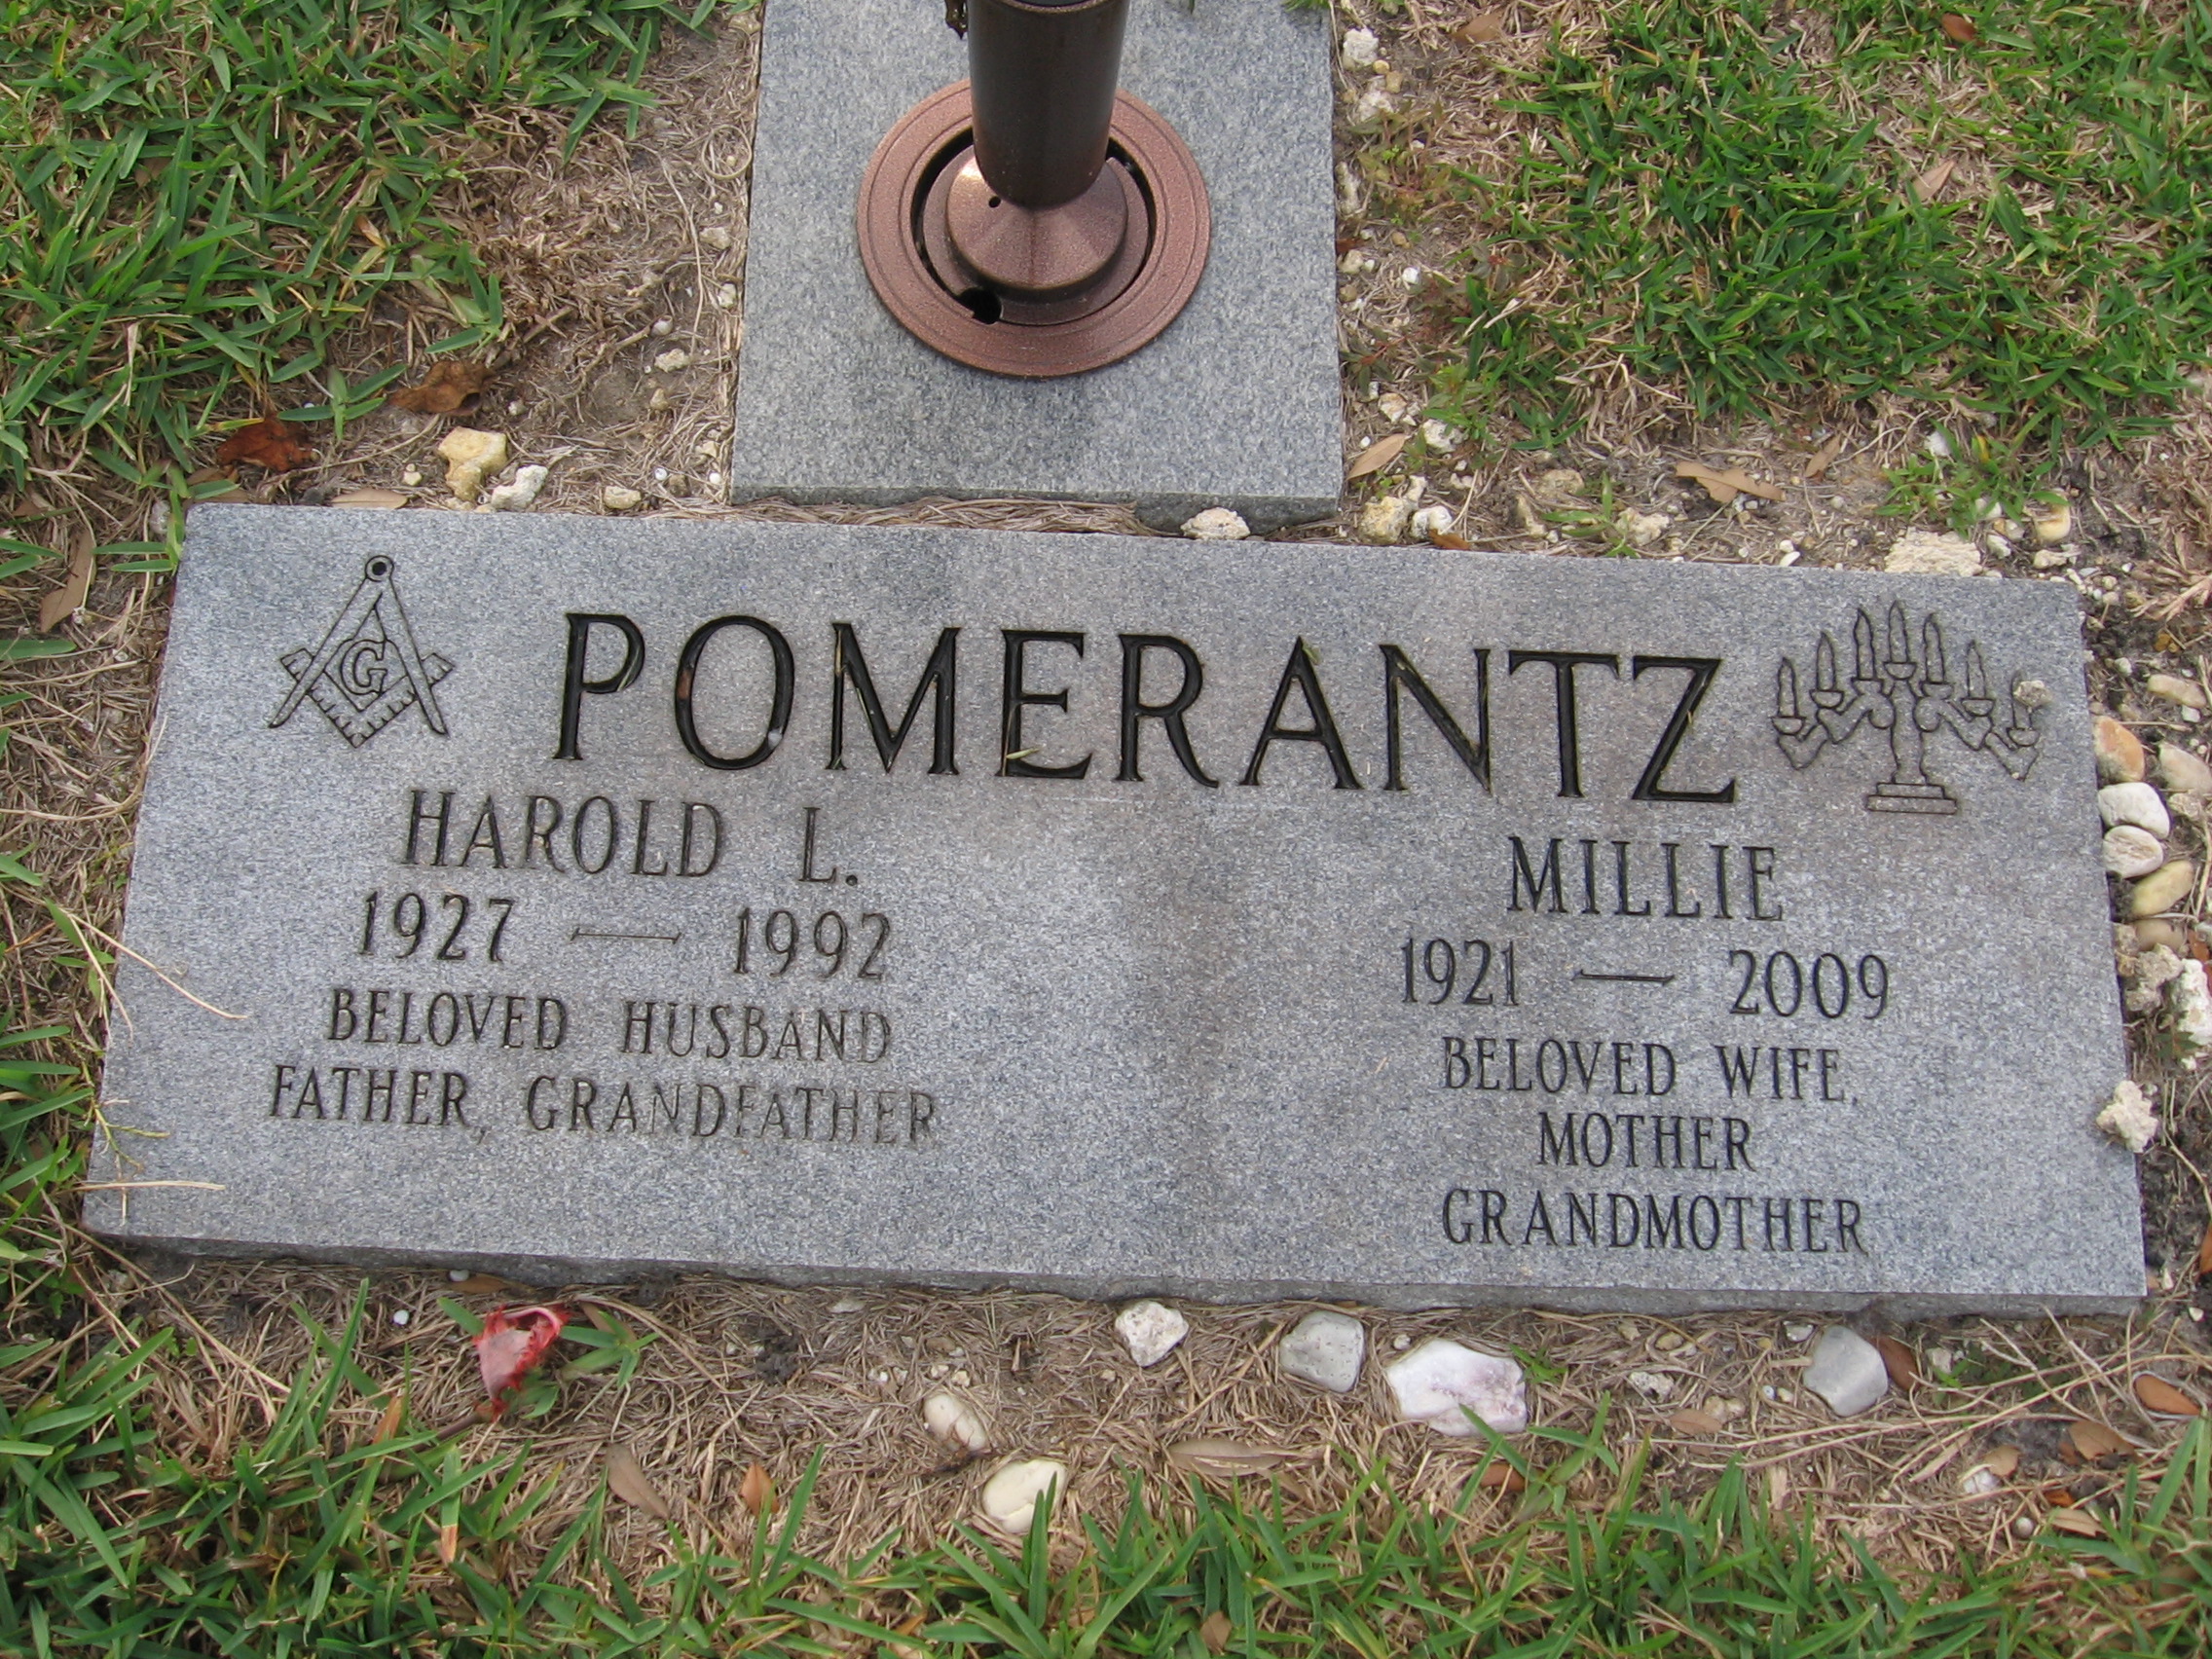 Harold L Pomerantz